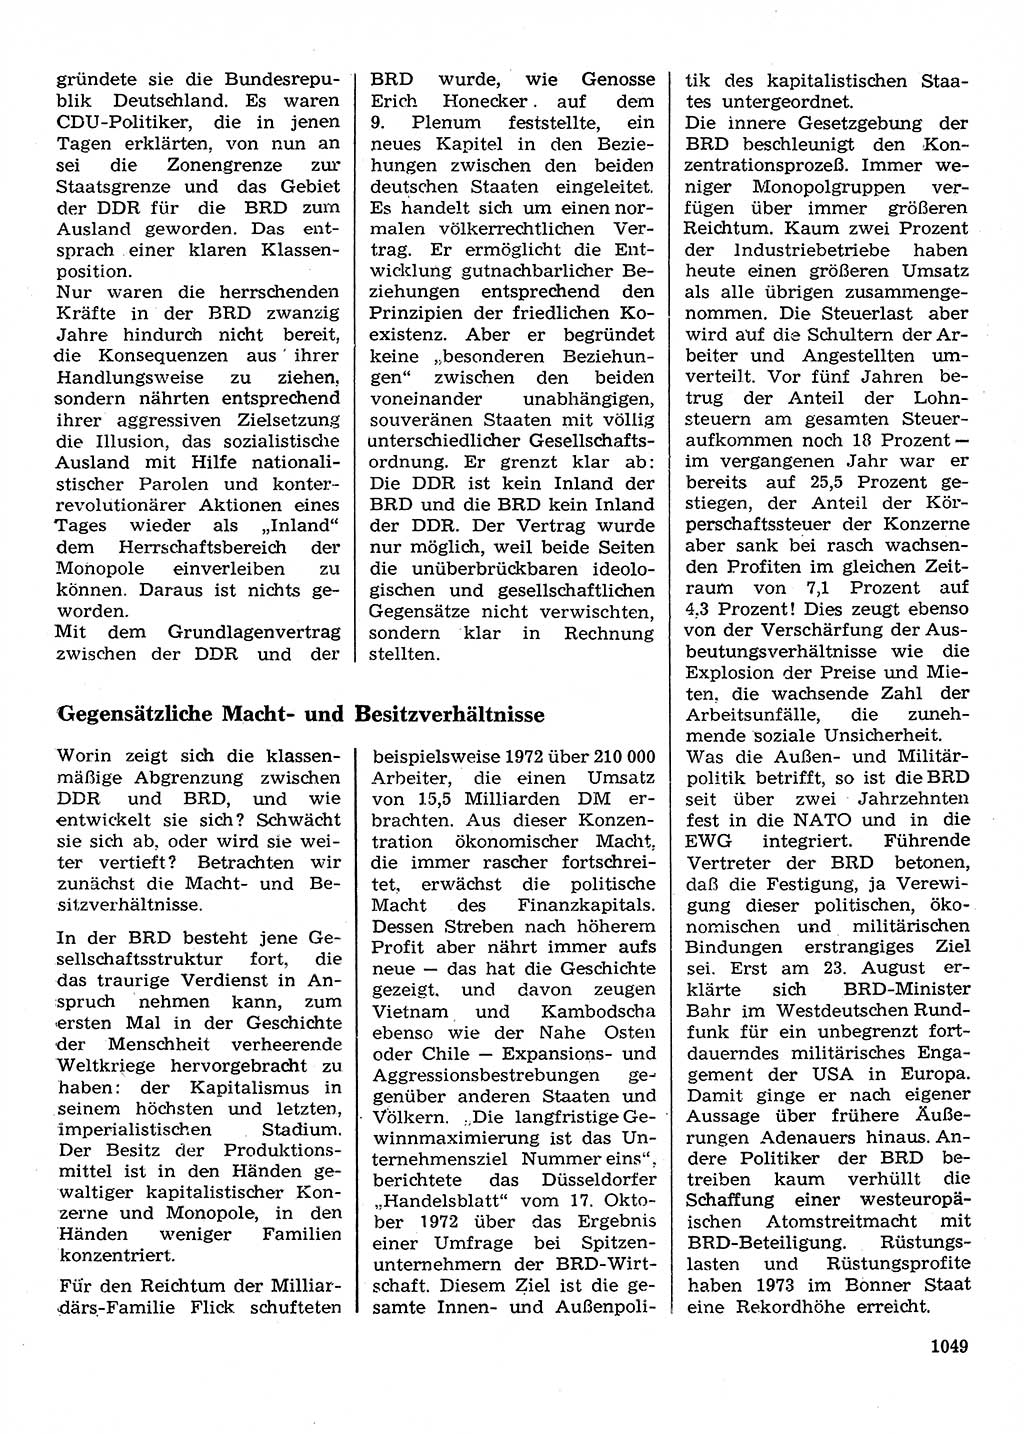 Neuer Weg (NW), Organ des Zentralkomitees (ZK) der SED (Sozialistische Einheitspartei Deutschlands) für Fragen des Parteilebens, 28. Jahrgang [Deutsche Demokratische Republik (DDR)] 1973, Seite 1049 (NW ZK SED DDR 1973, S. 1049)